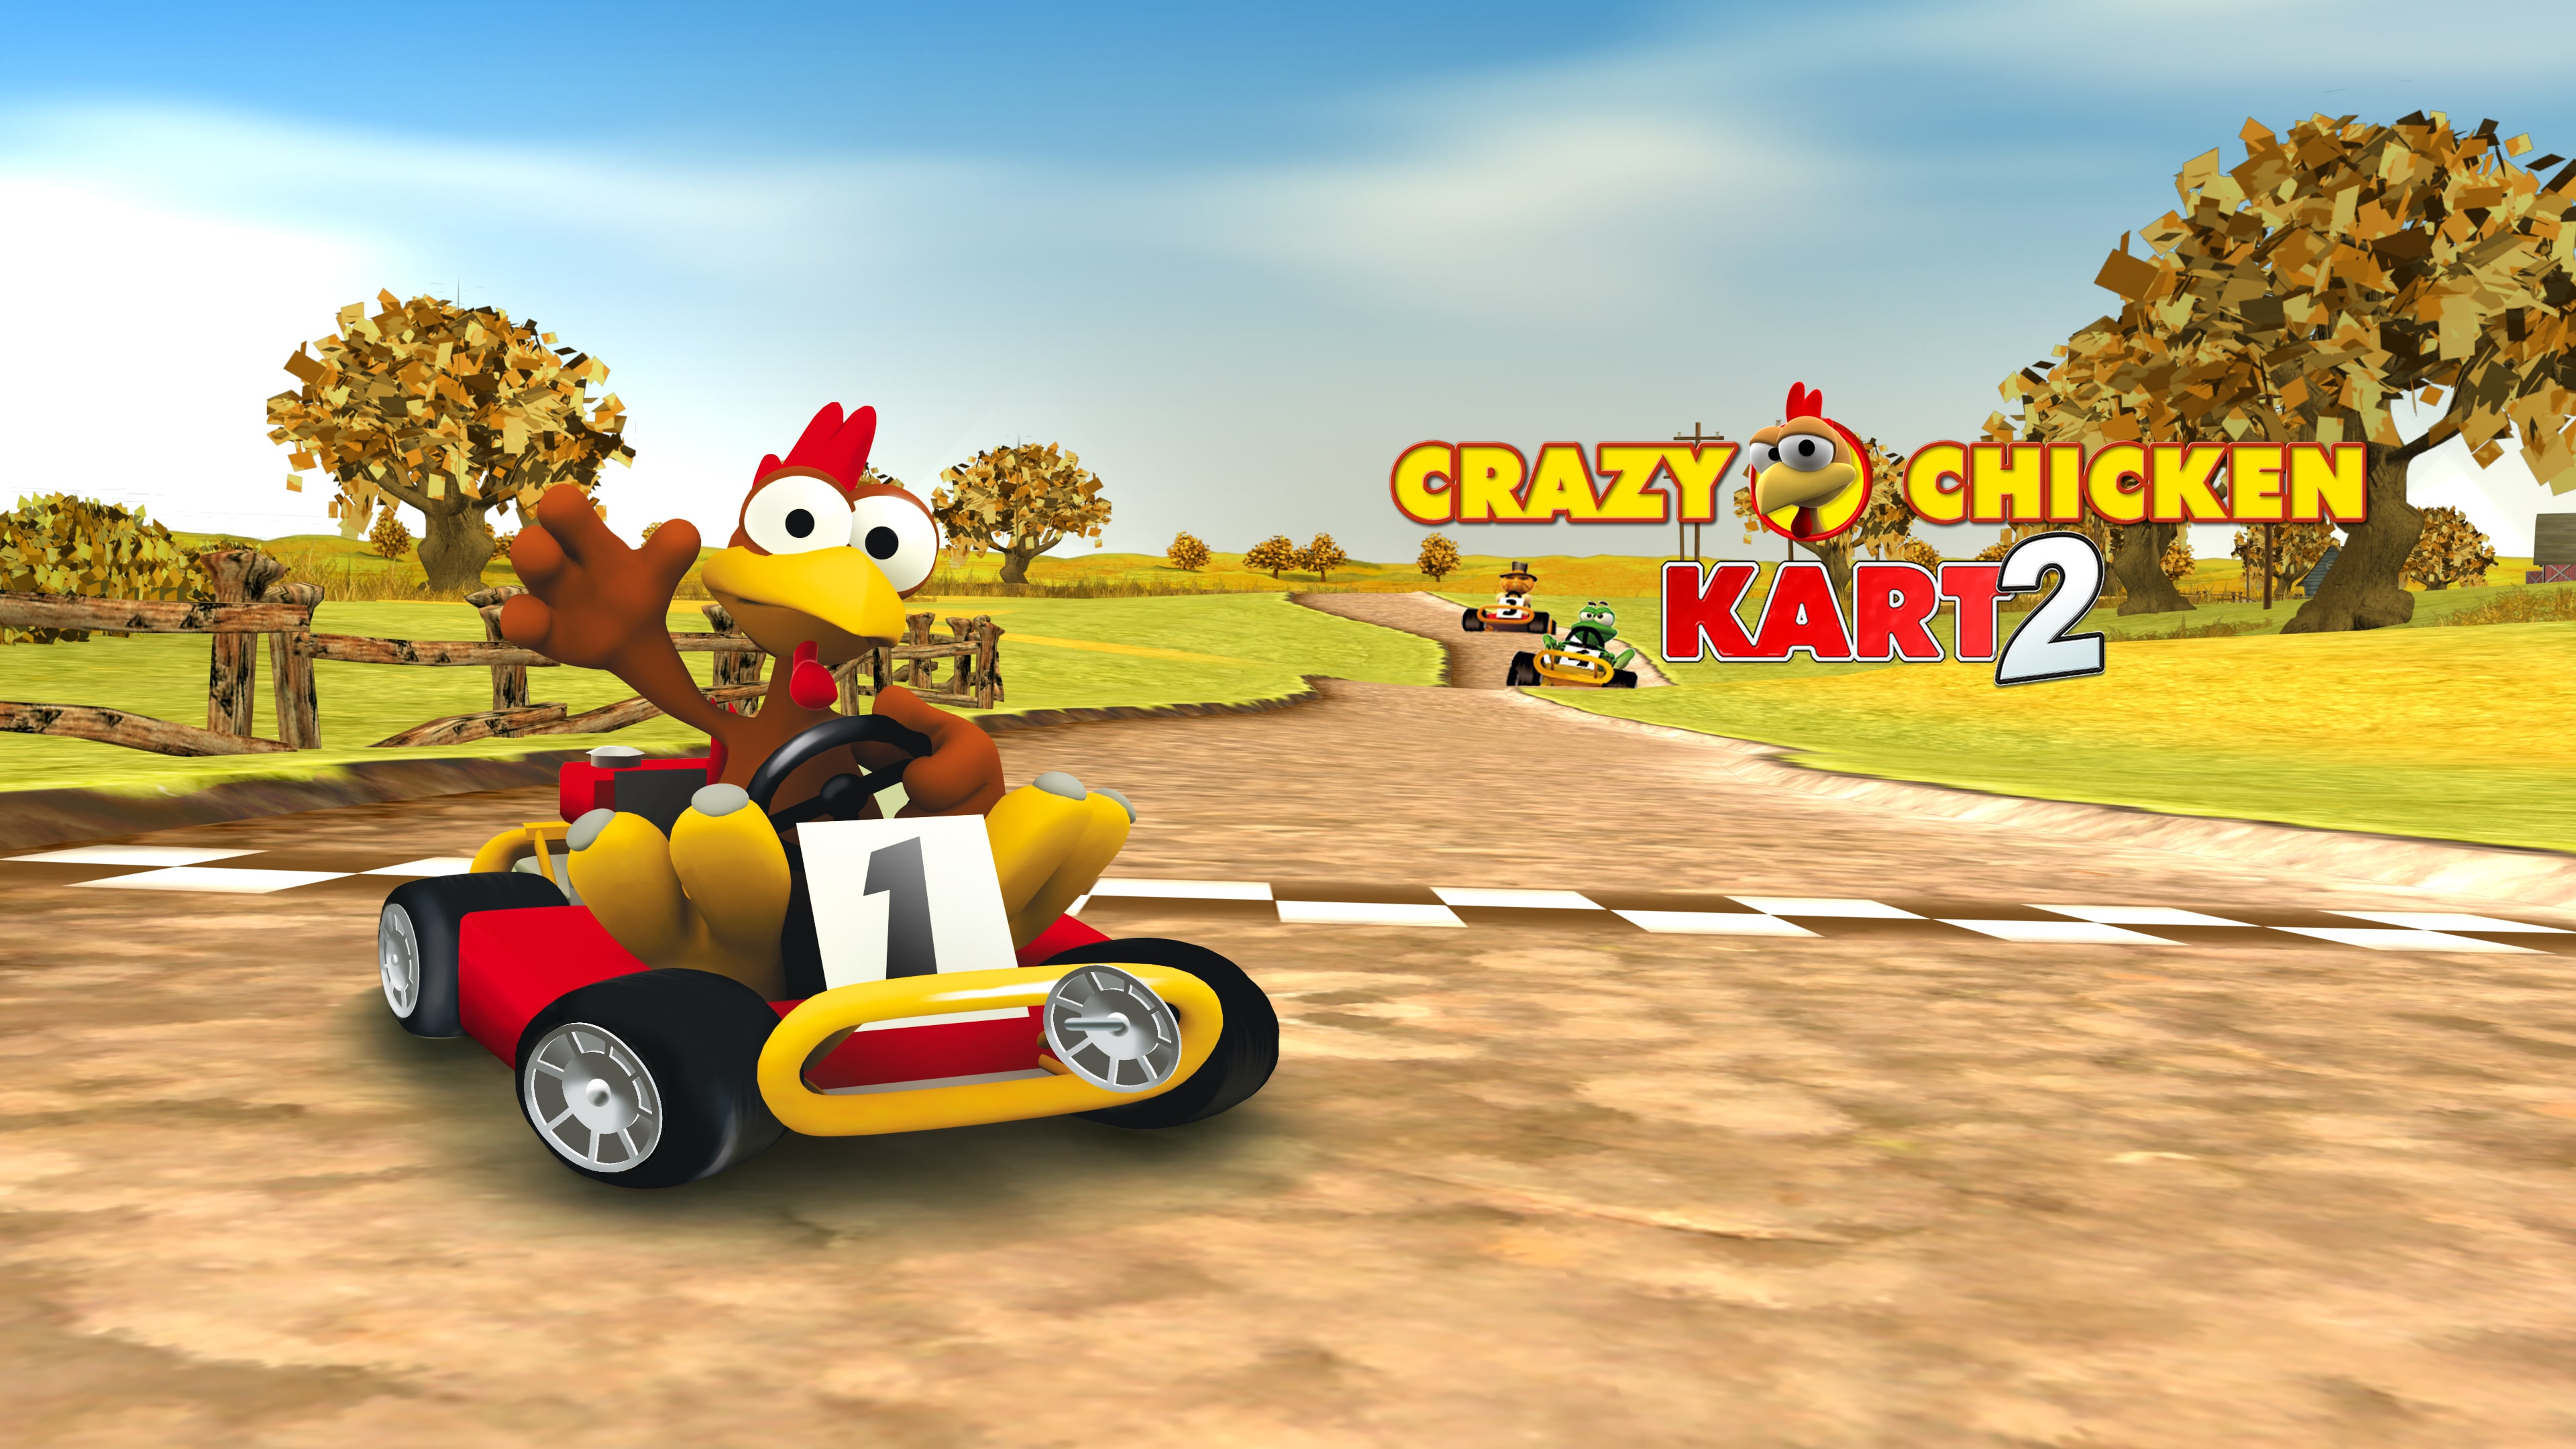 Kart Chicken 2 Crazy